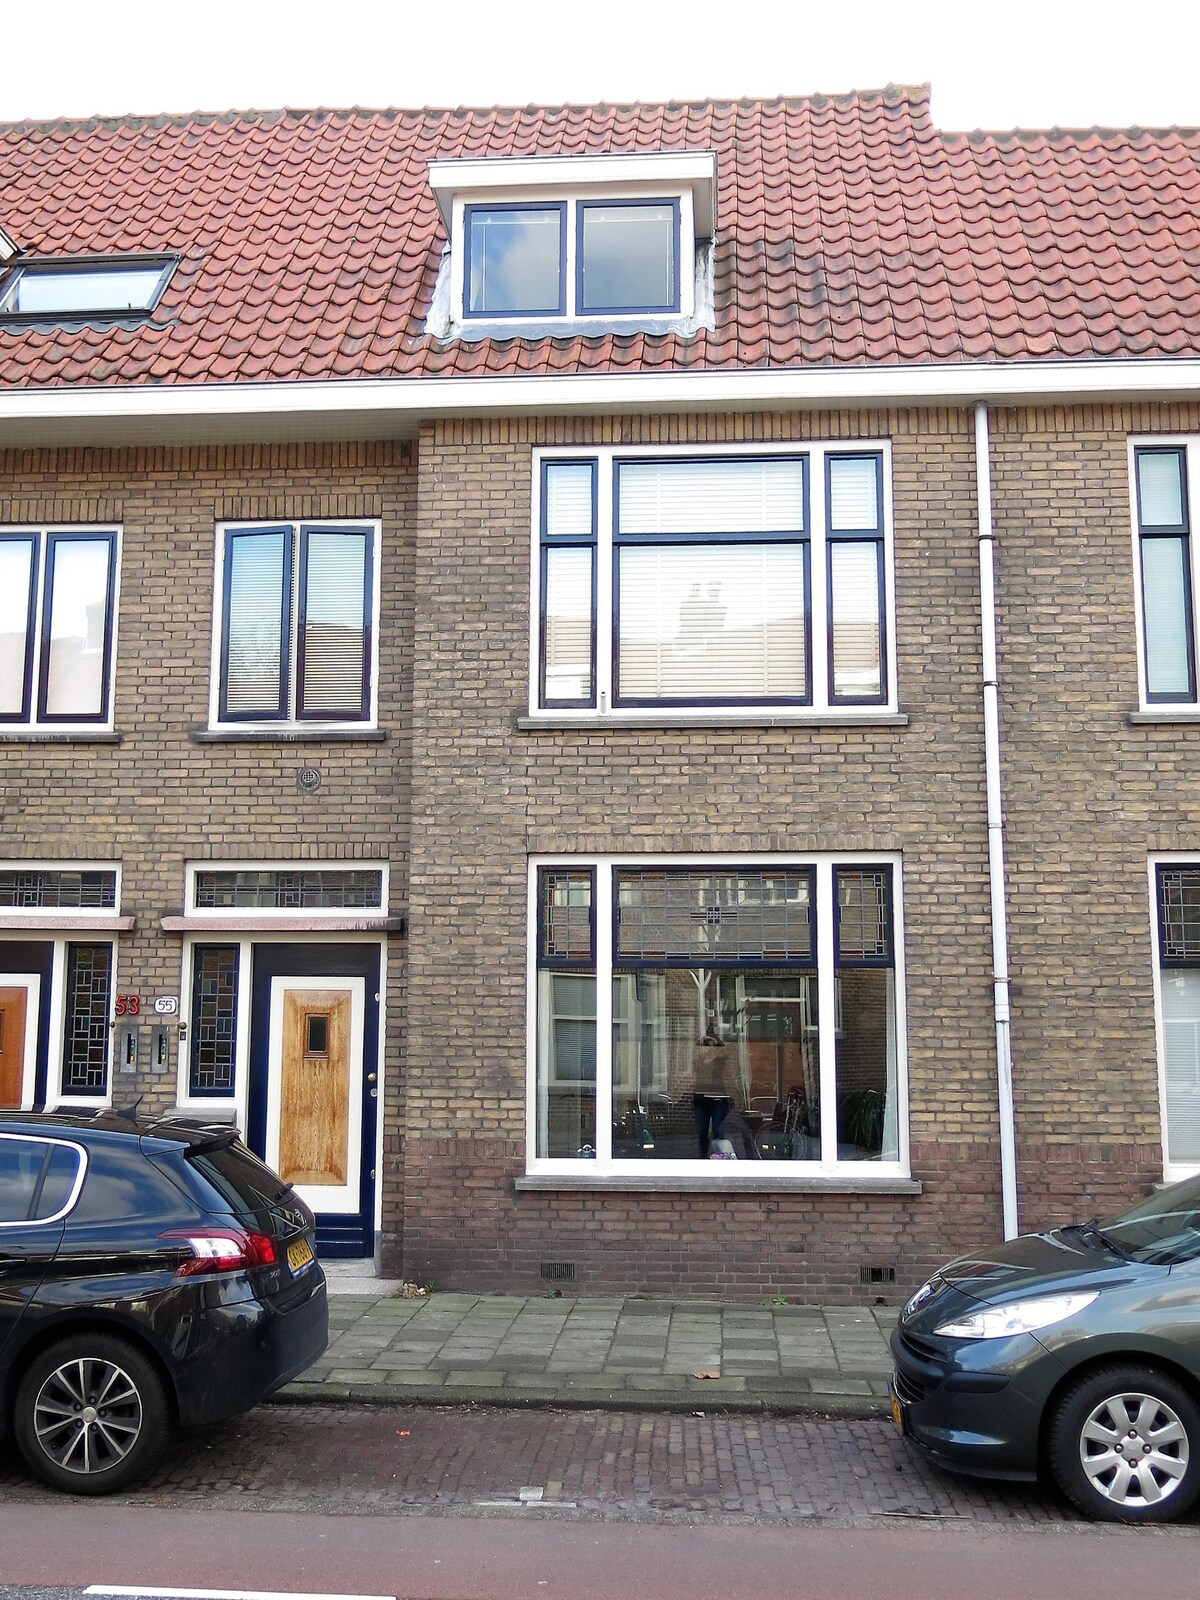 Beautiful home near historic Delft city center